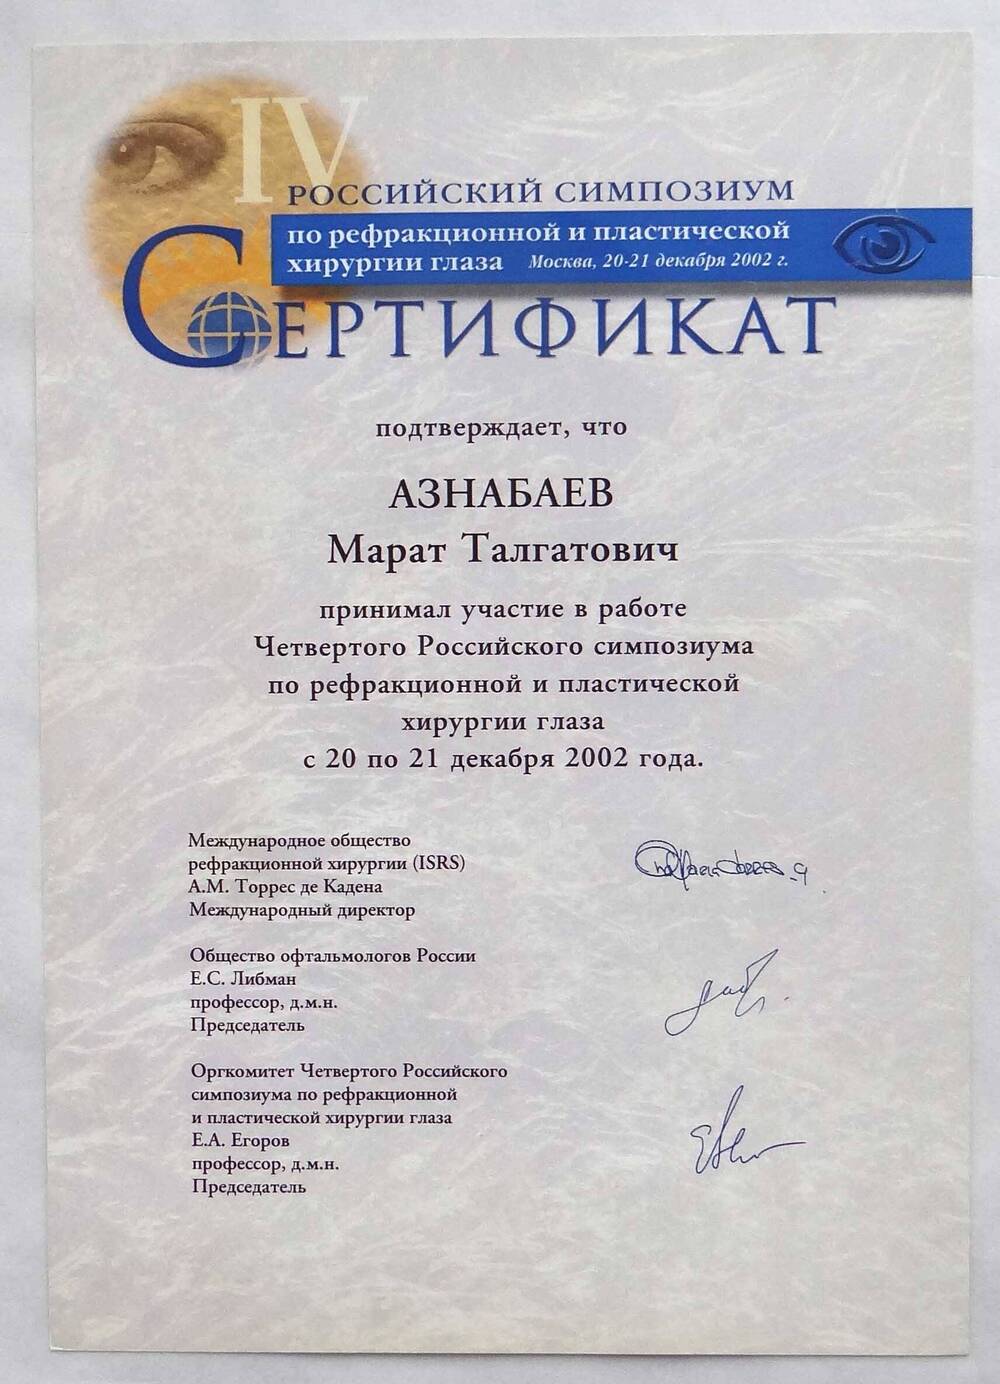 Сертификат, подтверждающий участие Азнабаева М.Т. в работе IV Российского симпозиума по рефракционной и пластической хирургии глаза с 20 по 21 декабря 2002 года. Москва.